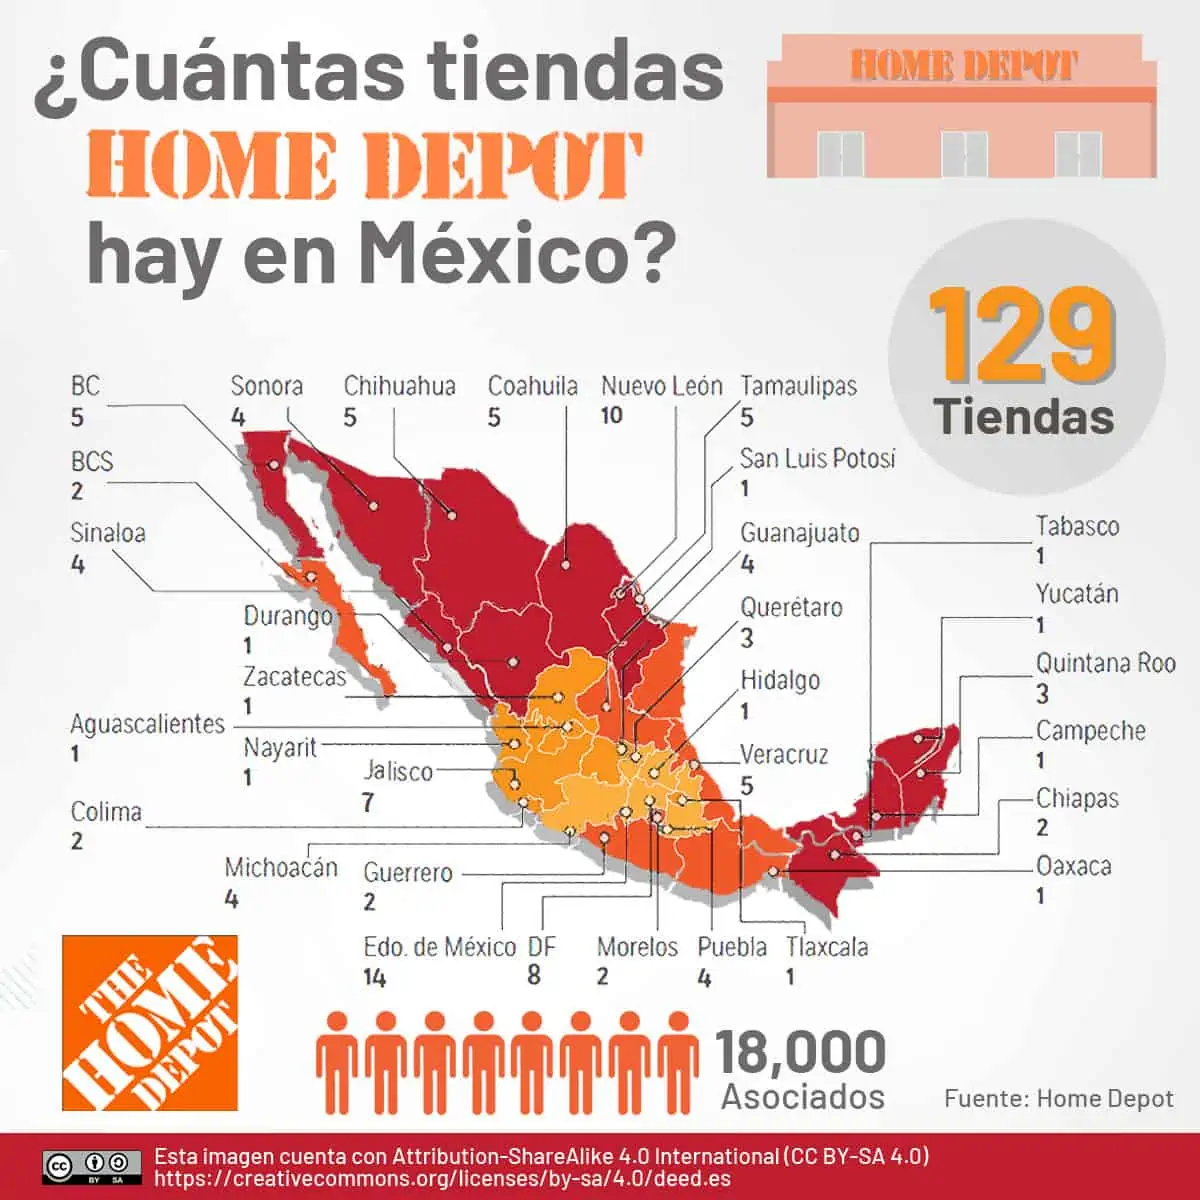 Cuantas tiendas Home Depot hay en México 